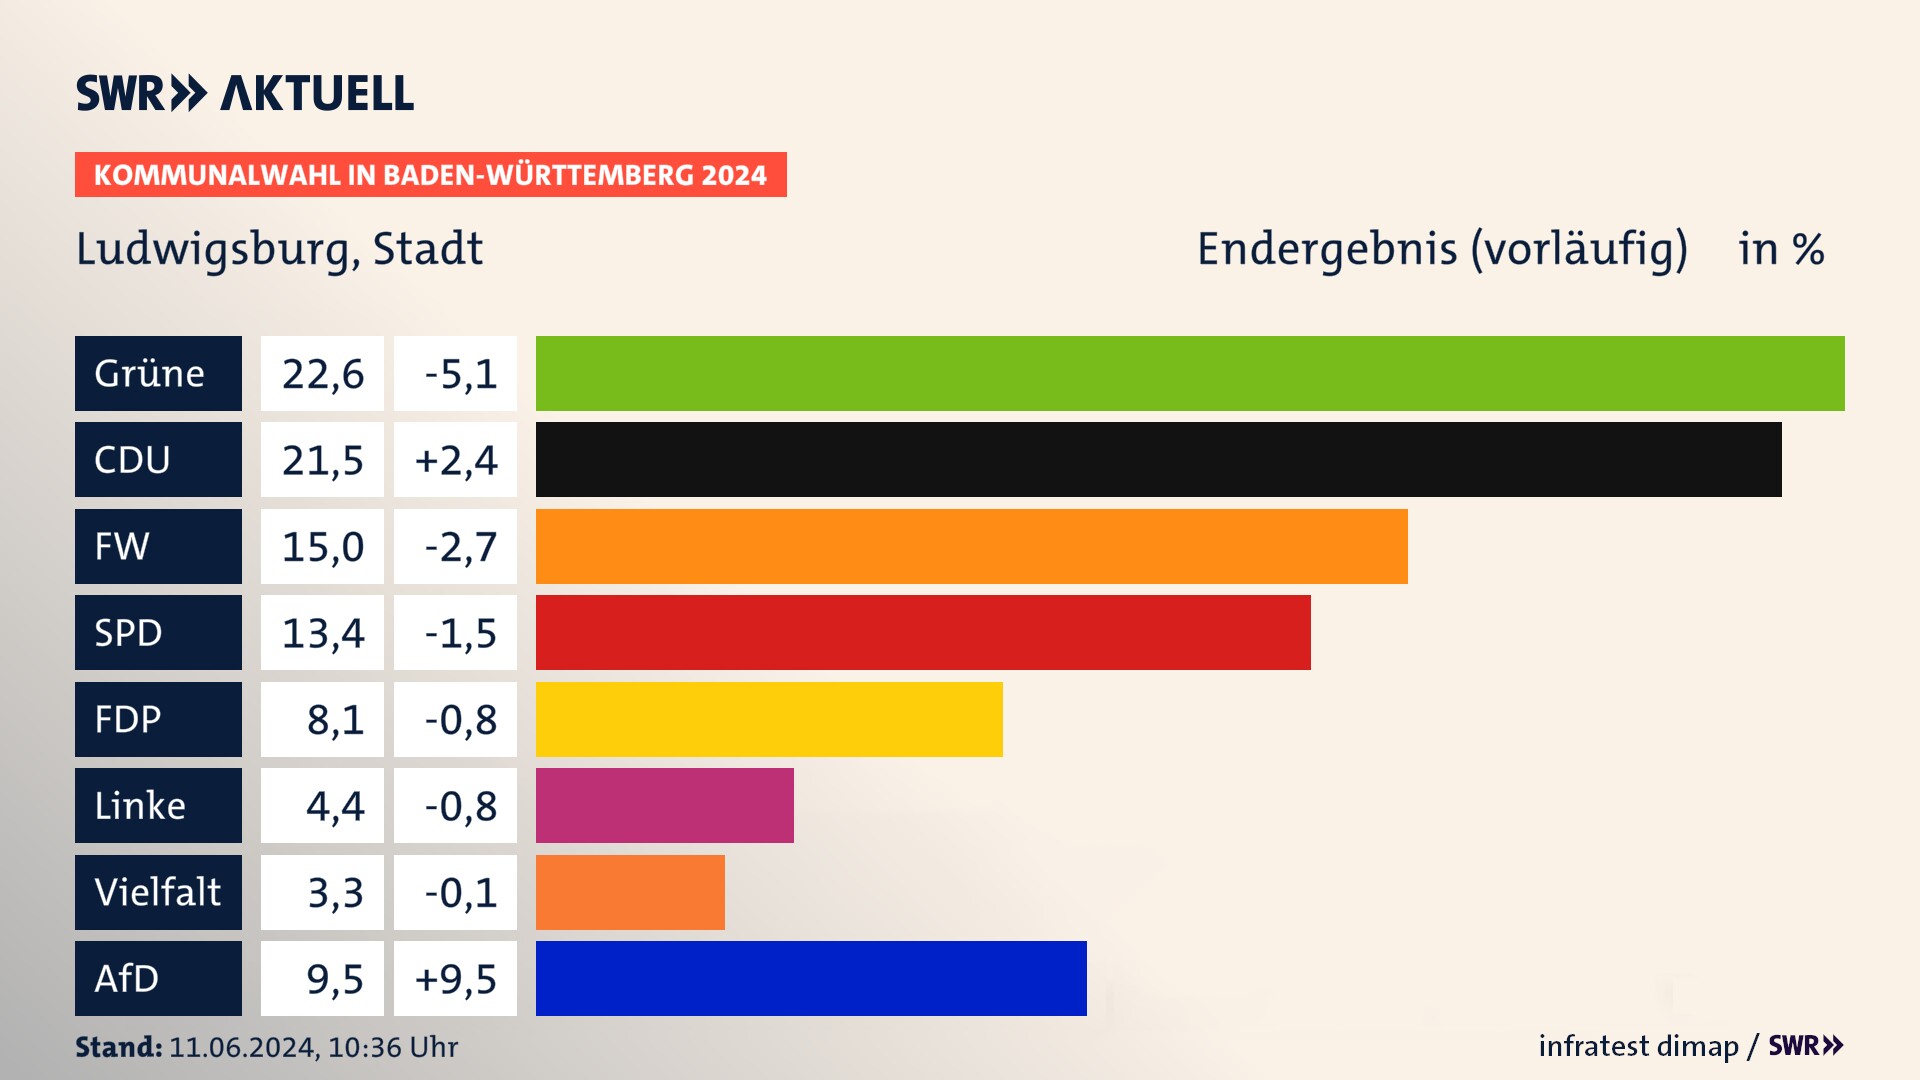 Kommunalwahl 2024 Vorlaeufigesendergebnis Zweitstimme für Ludwigsburg. In Ludwigsburg, Stadt erzielen die Grünen 22,6 Prozent der gültigen  Stimmen. Die CDU landet bei 21,5 Prozent. Der Wahlvorschlag FW erreicht 15,0 Prozent. Die SPD kommt auf 13,4 Prozent. Die FDP landet bei 8,1 Prozent. Die AfD erreicht 9,5 Prozent.